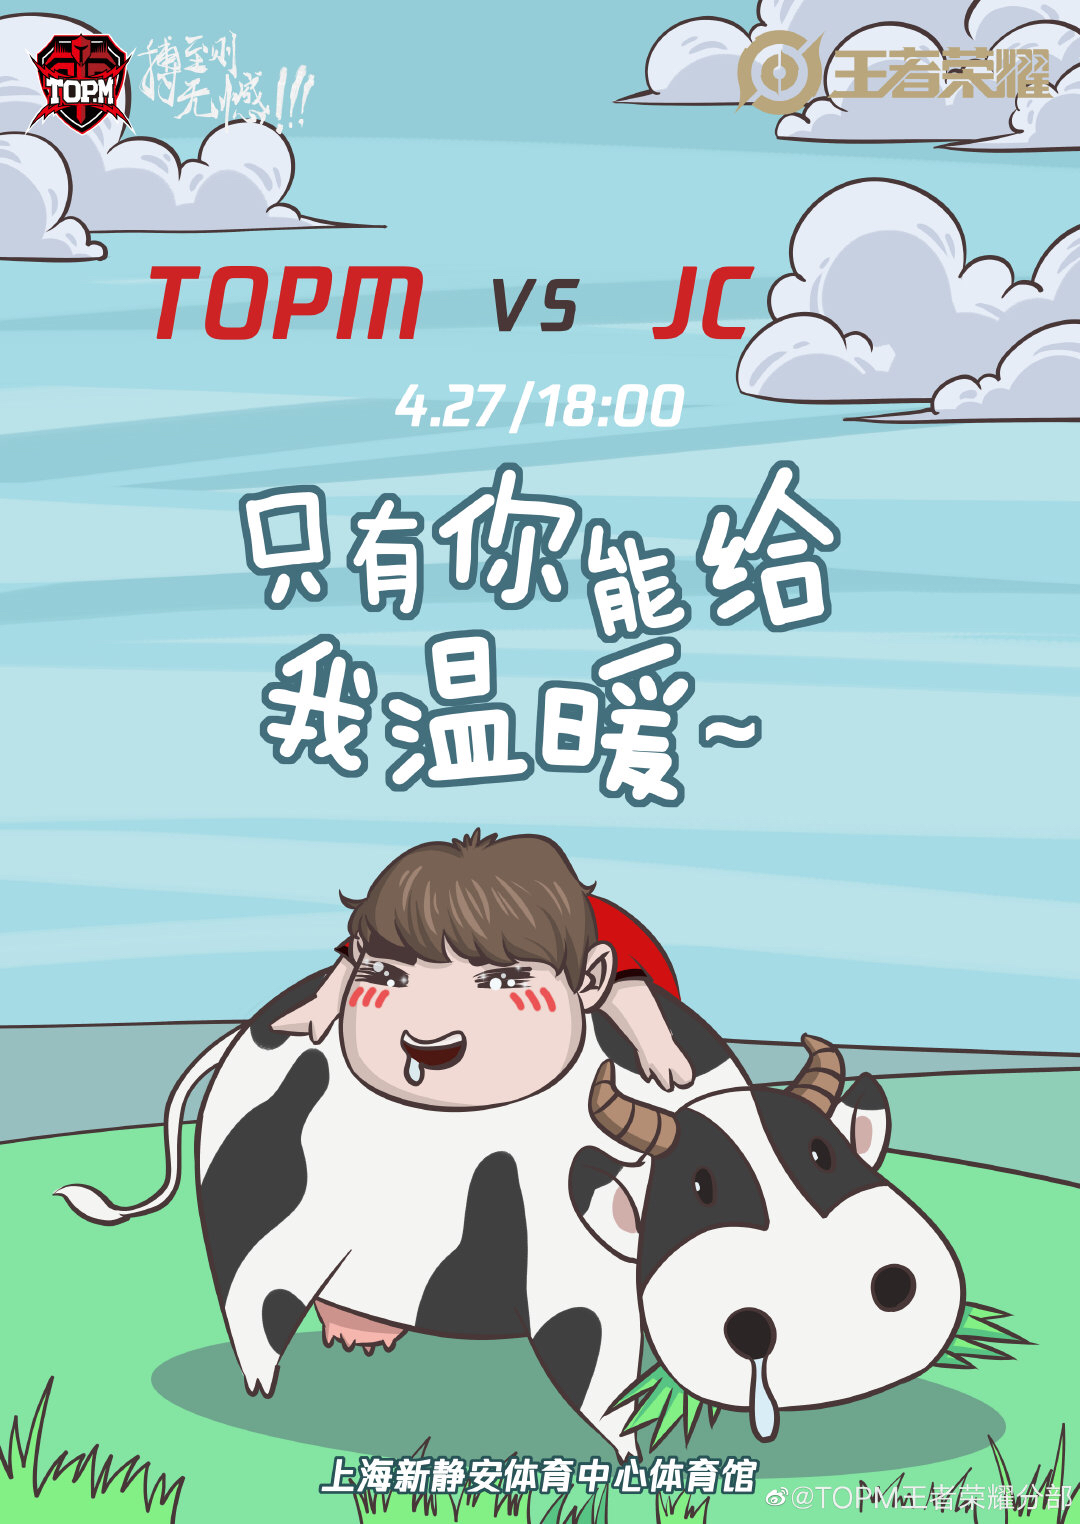 【赛事预告 TOPM vs JC】